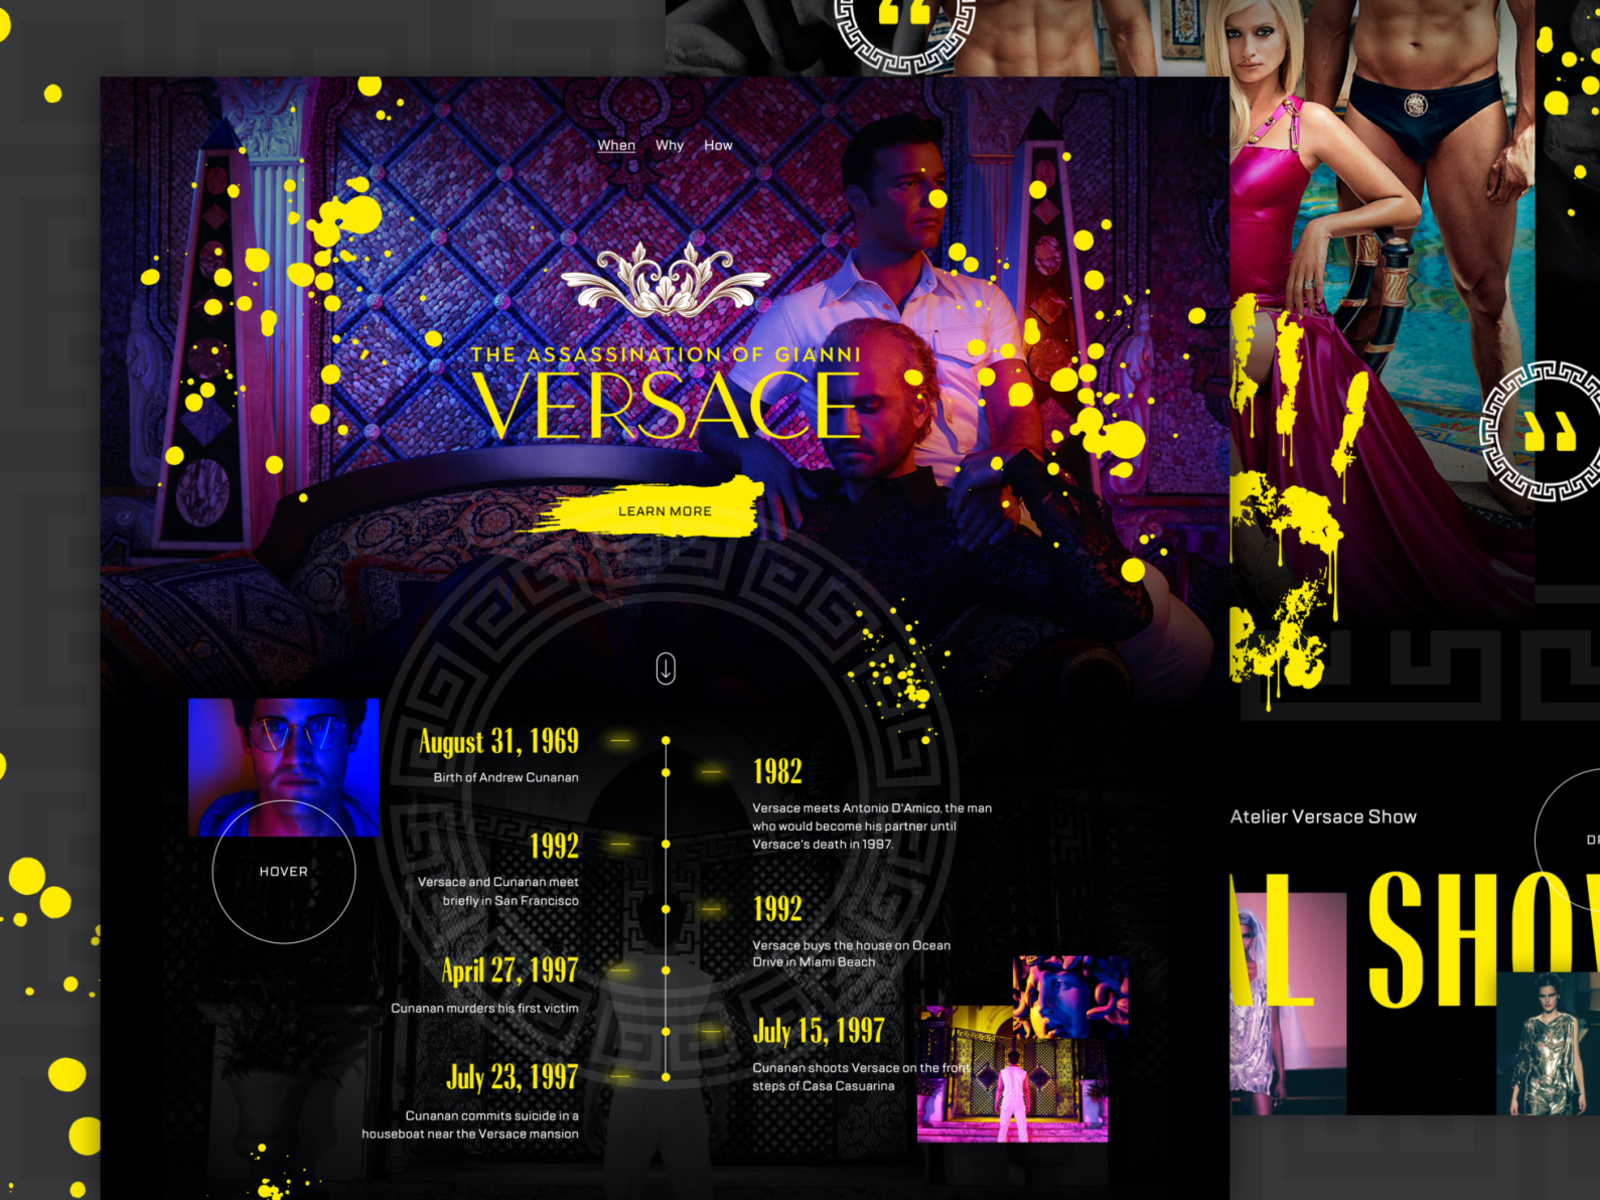 gianni versace website